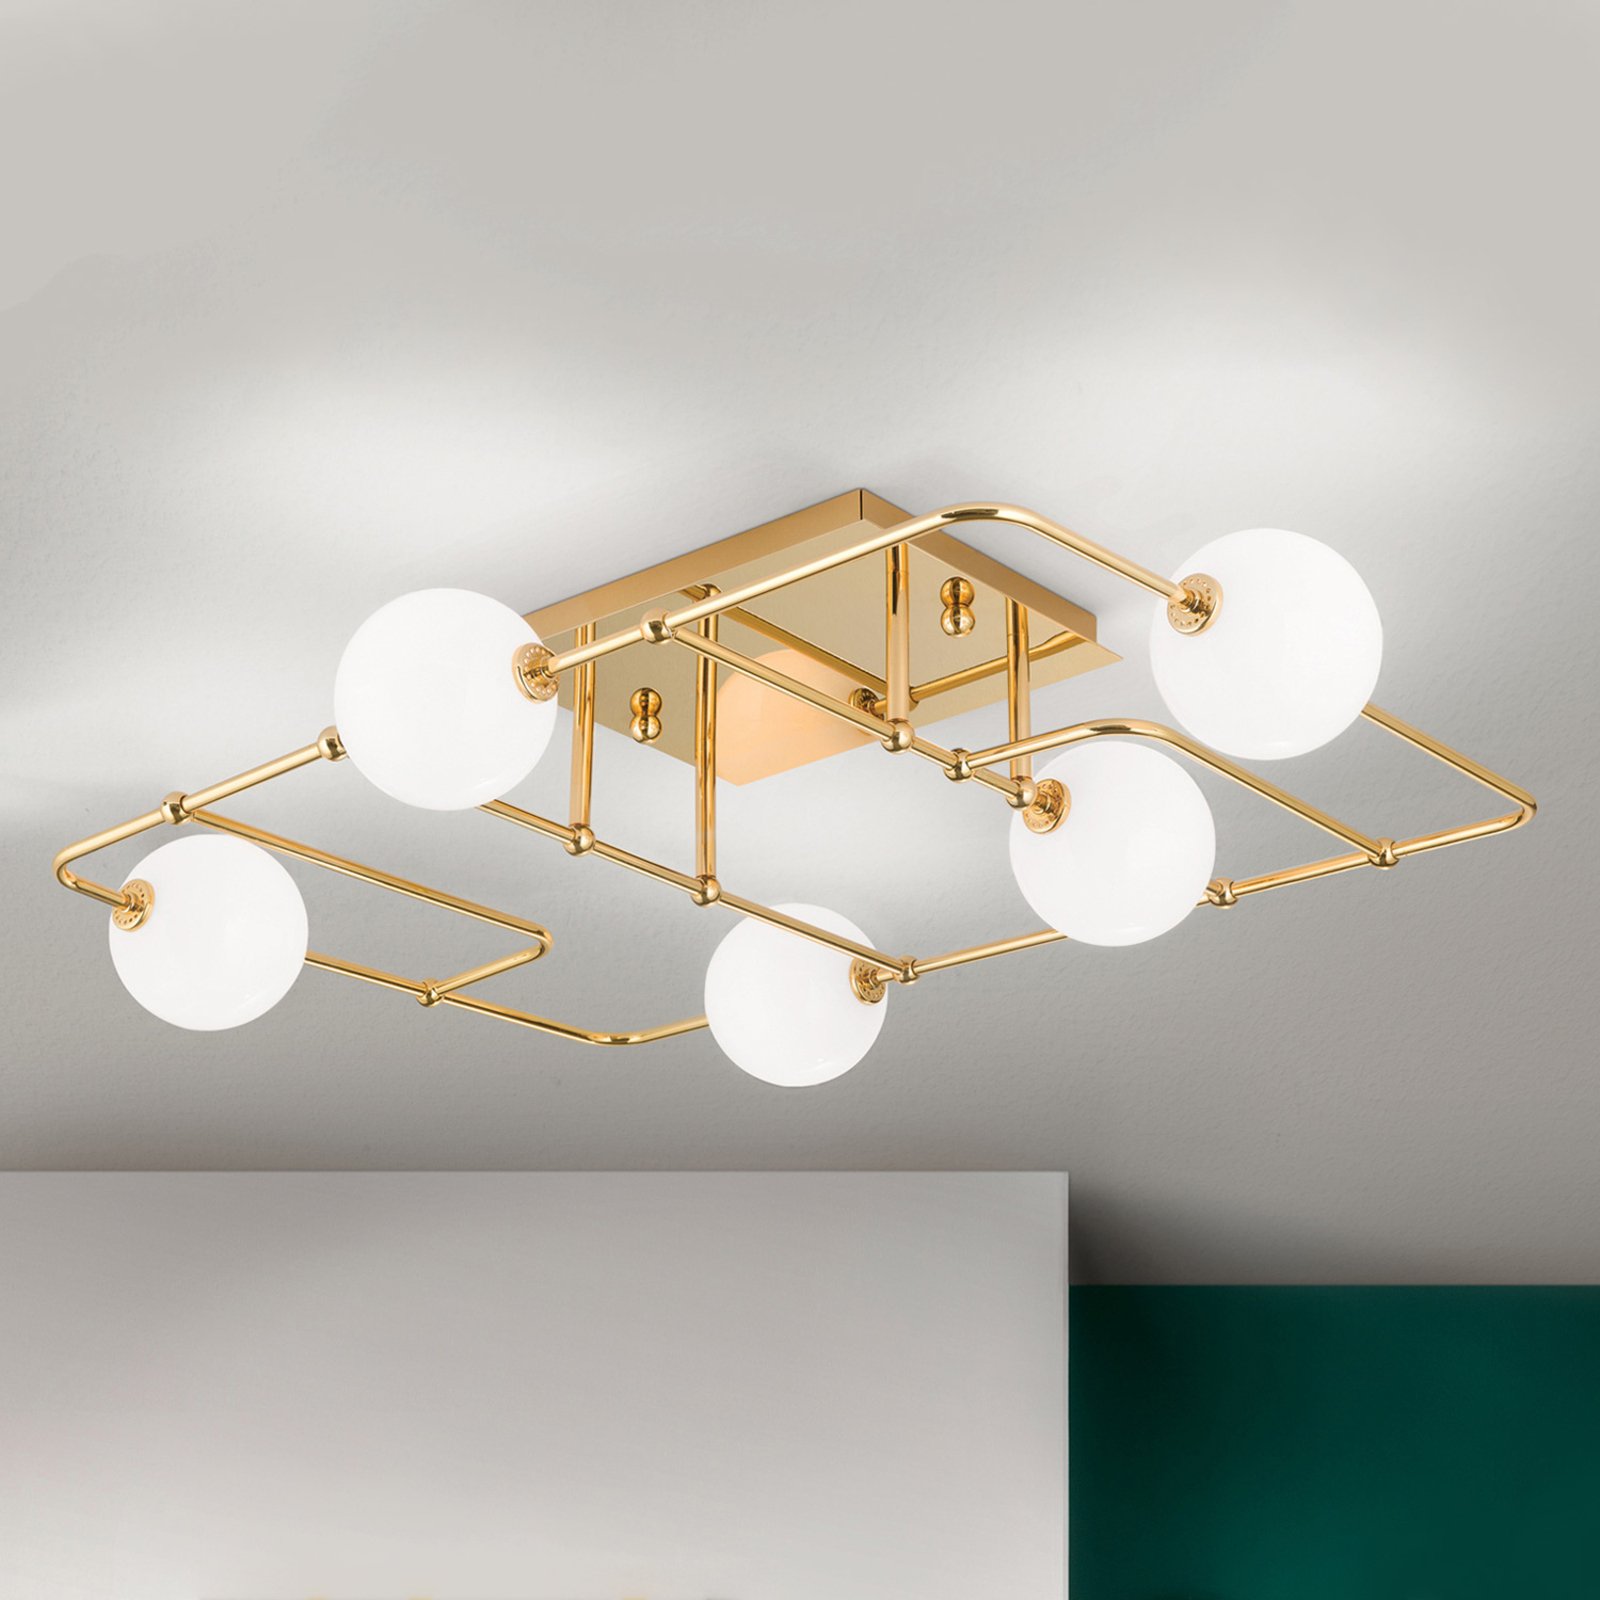 Φωτιστικό οροφής LED Pipes σε χρυσό χρώμα με γυάλινες σφαίρες